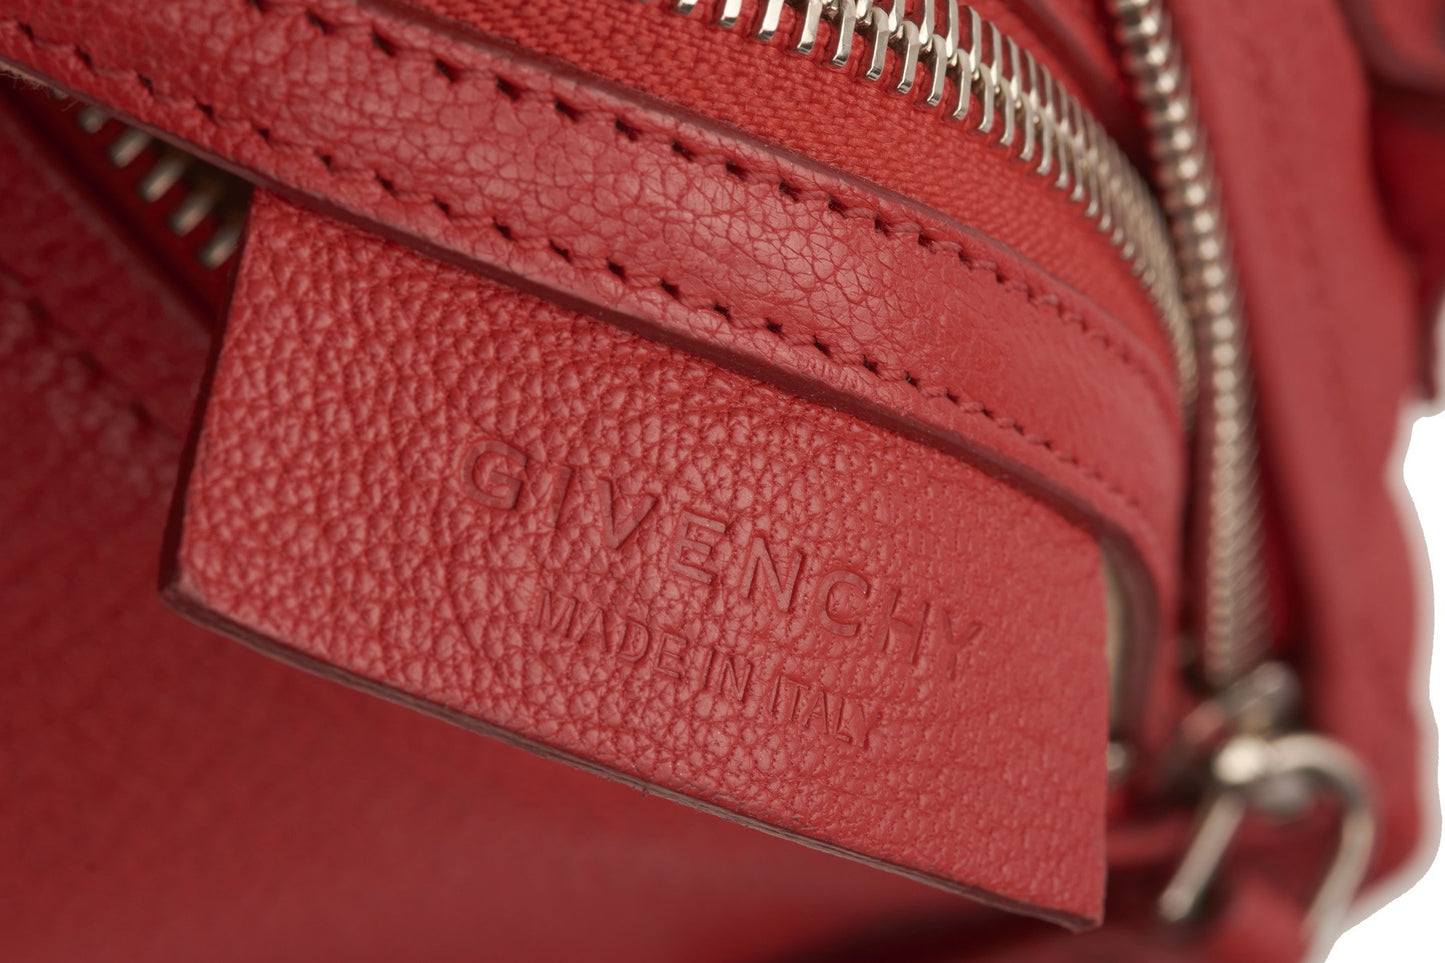 Mini sac à bandoulière Pandora en cuir grainé rouge Givenchy